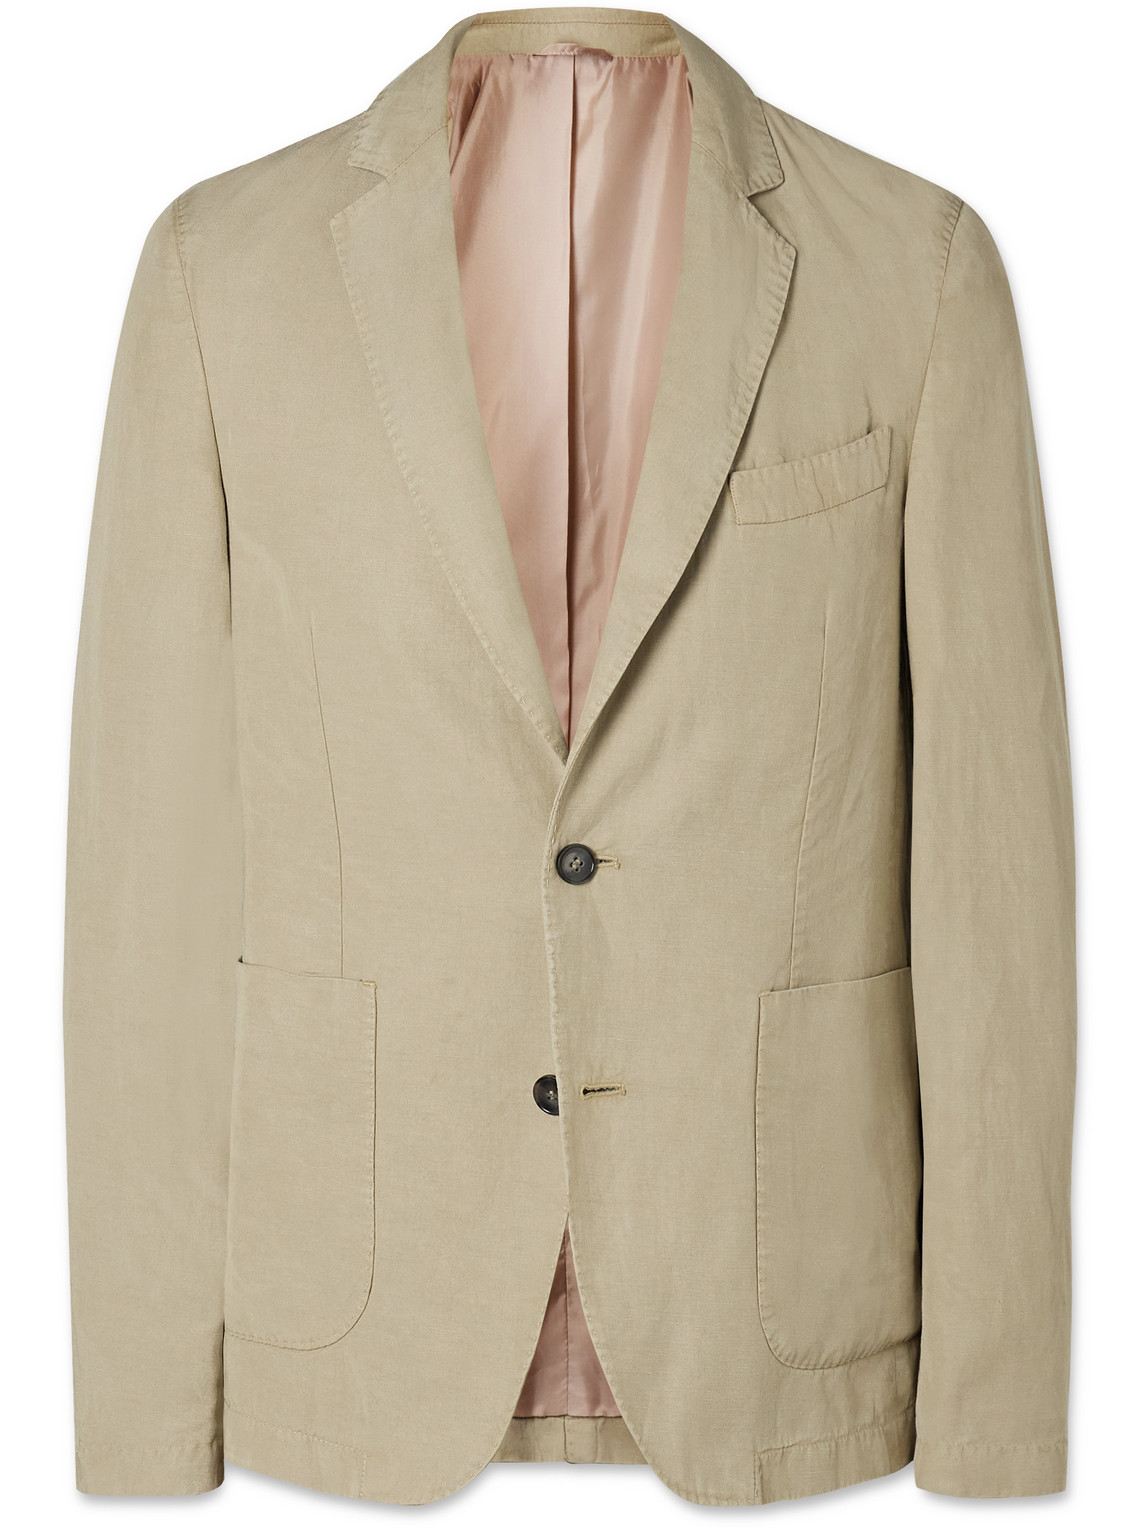 Officine Générale - Nehemiah Garment-Dyed Lyocell, Linen and Cotton-Blend Suit Jacket - Men - Neutrals - IT 54 von Officine Générale